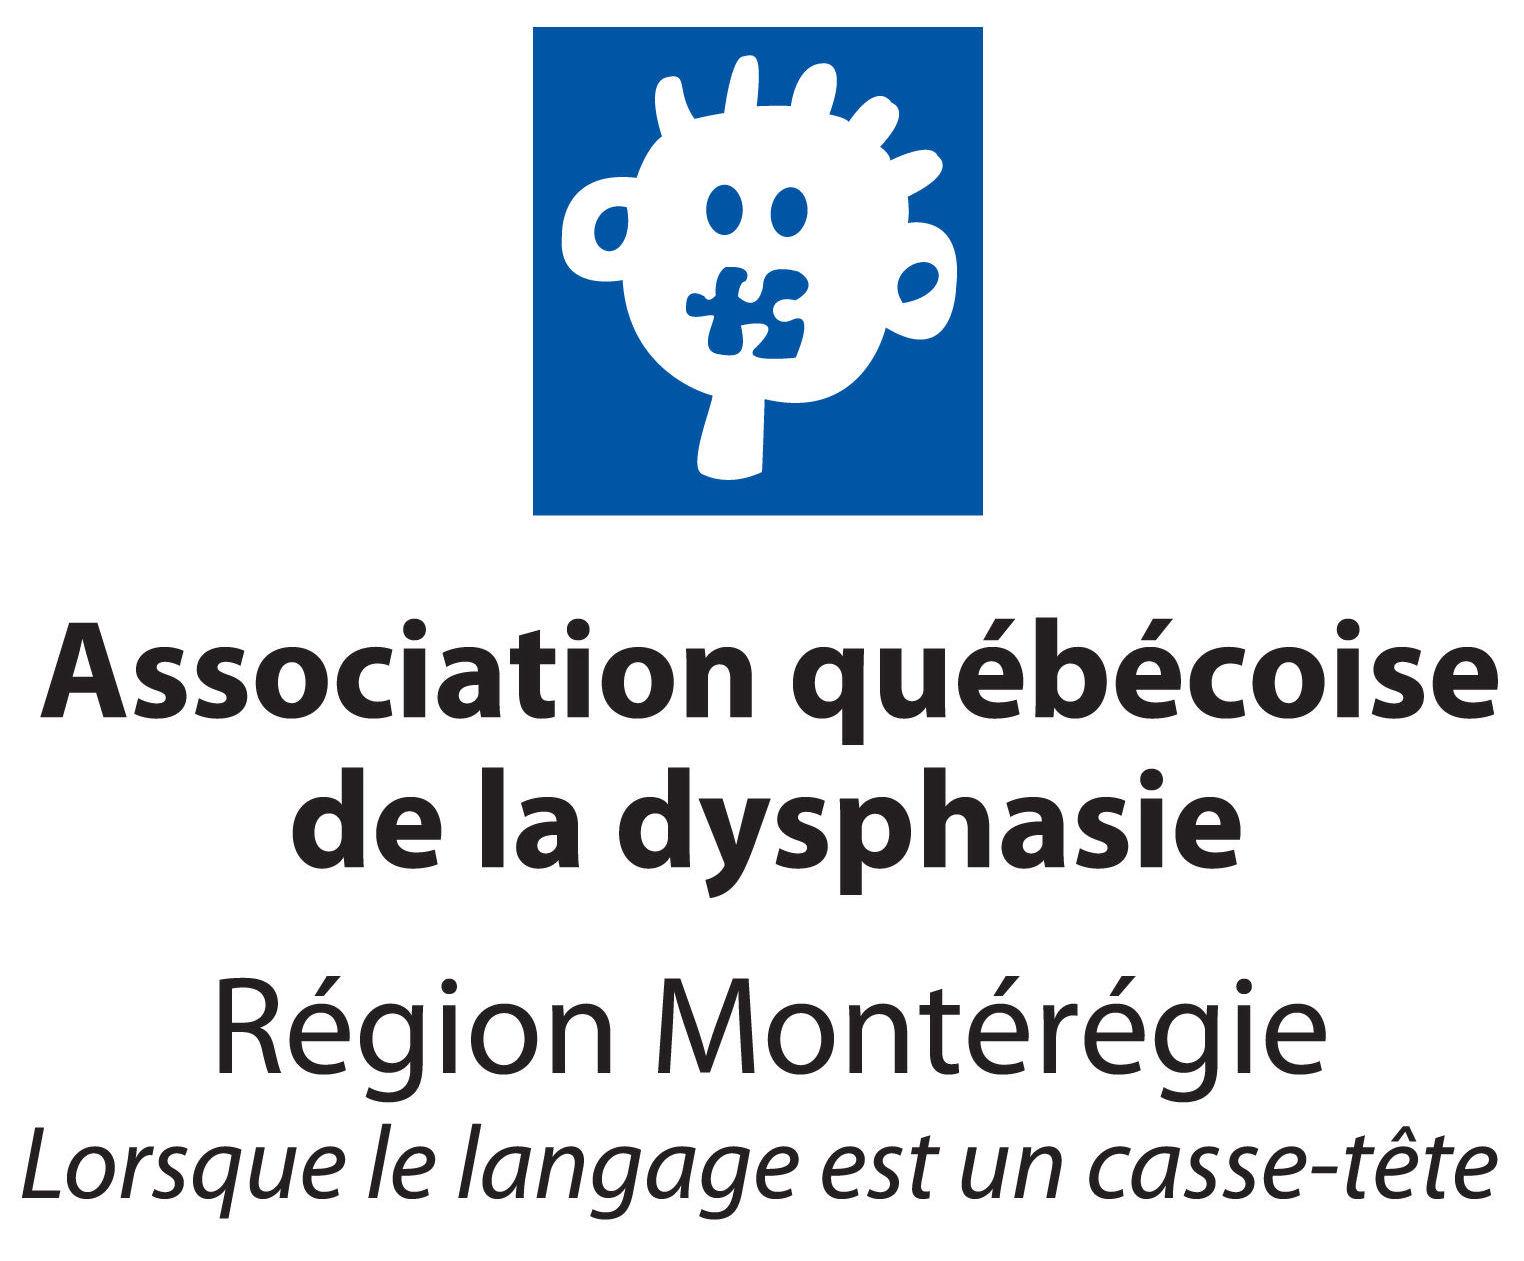 Association québécoise de la dysphasie région Montérégie (AQDM)